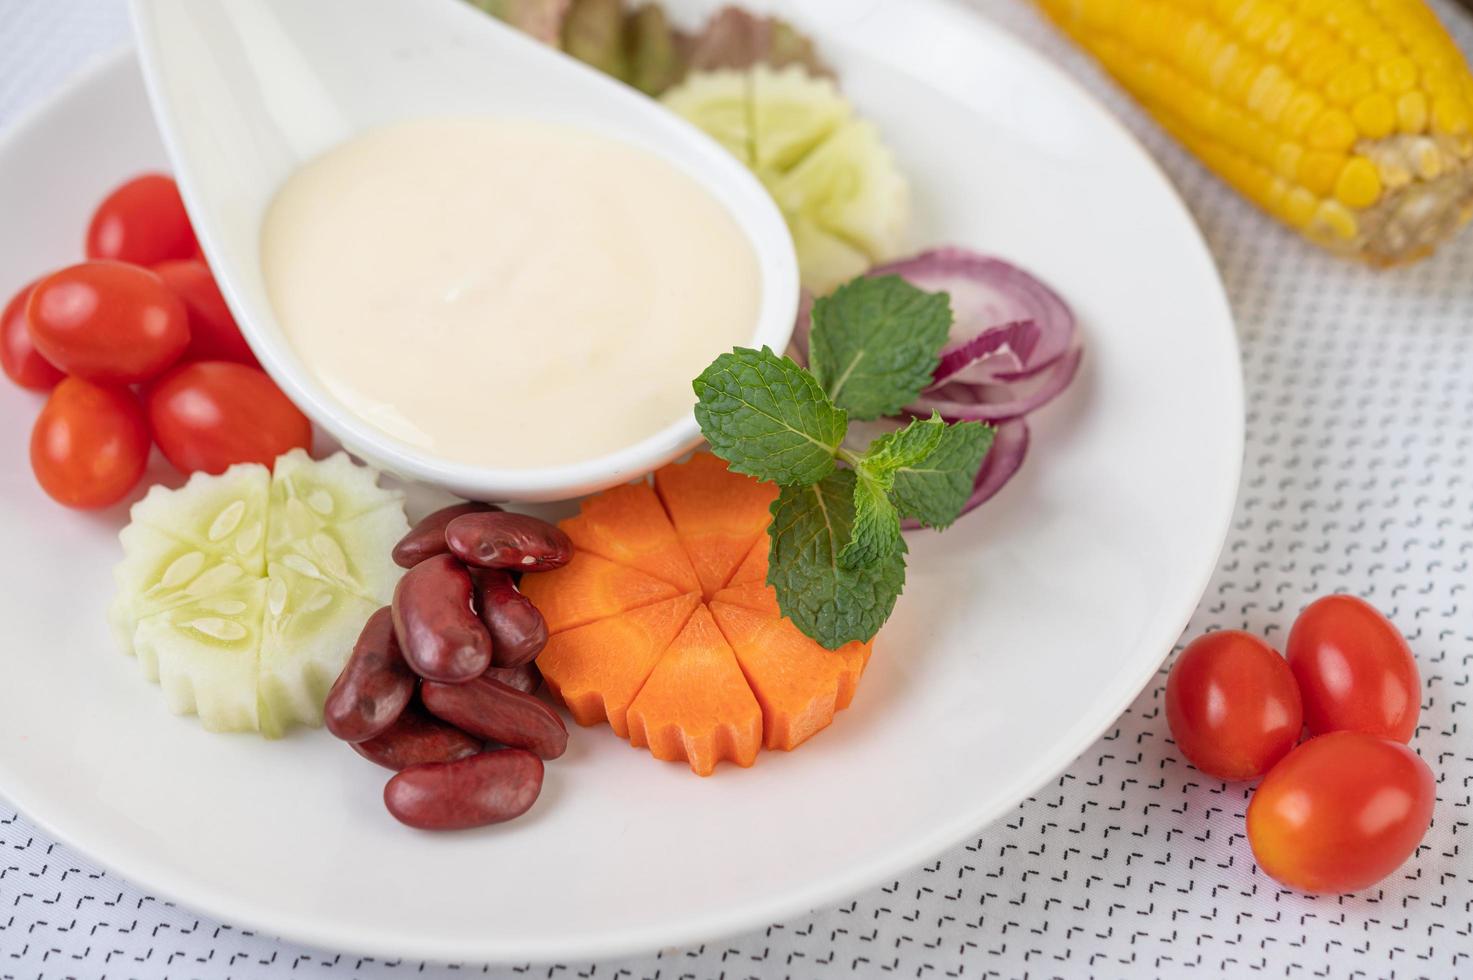 salade de fruits et légumes sur une assiette blanche photo